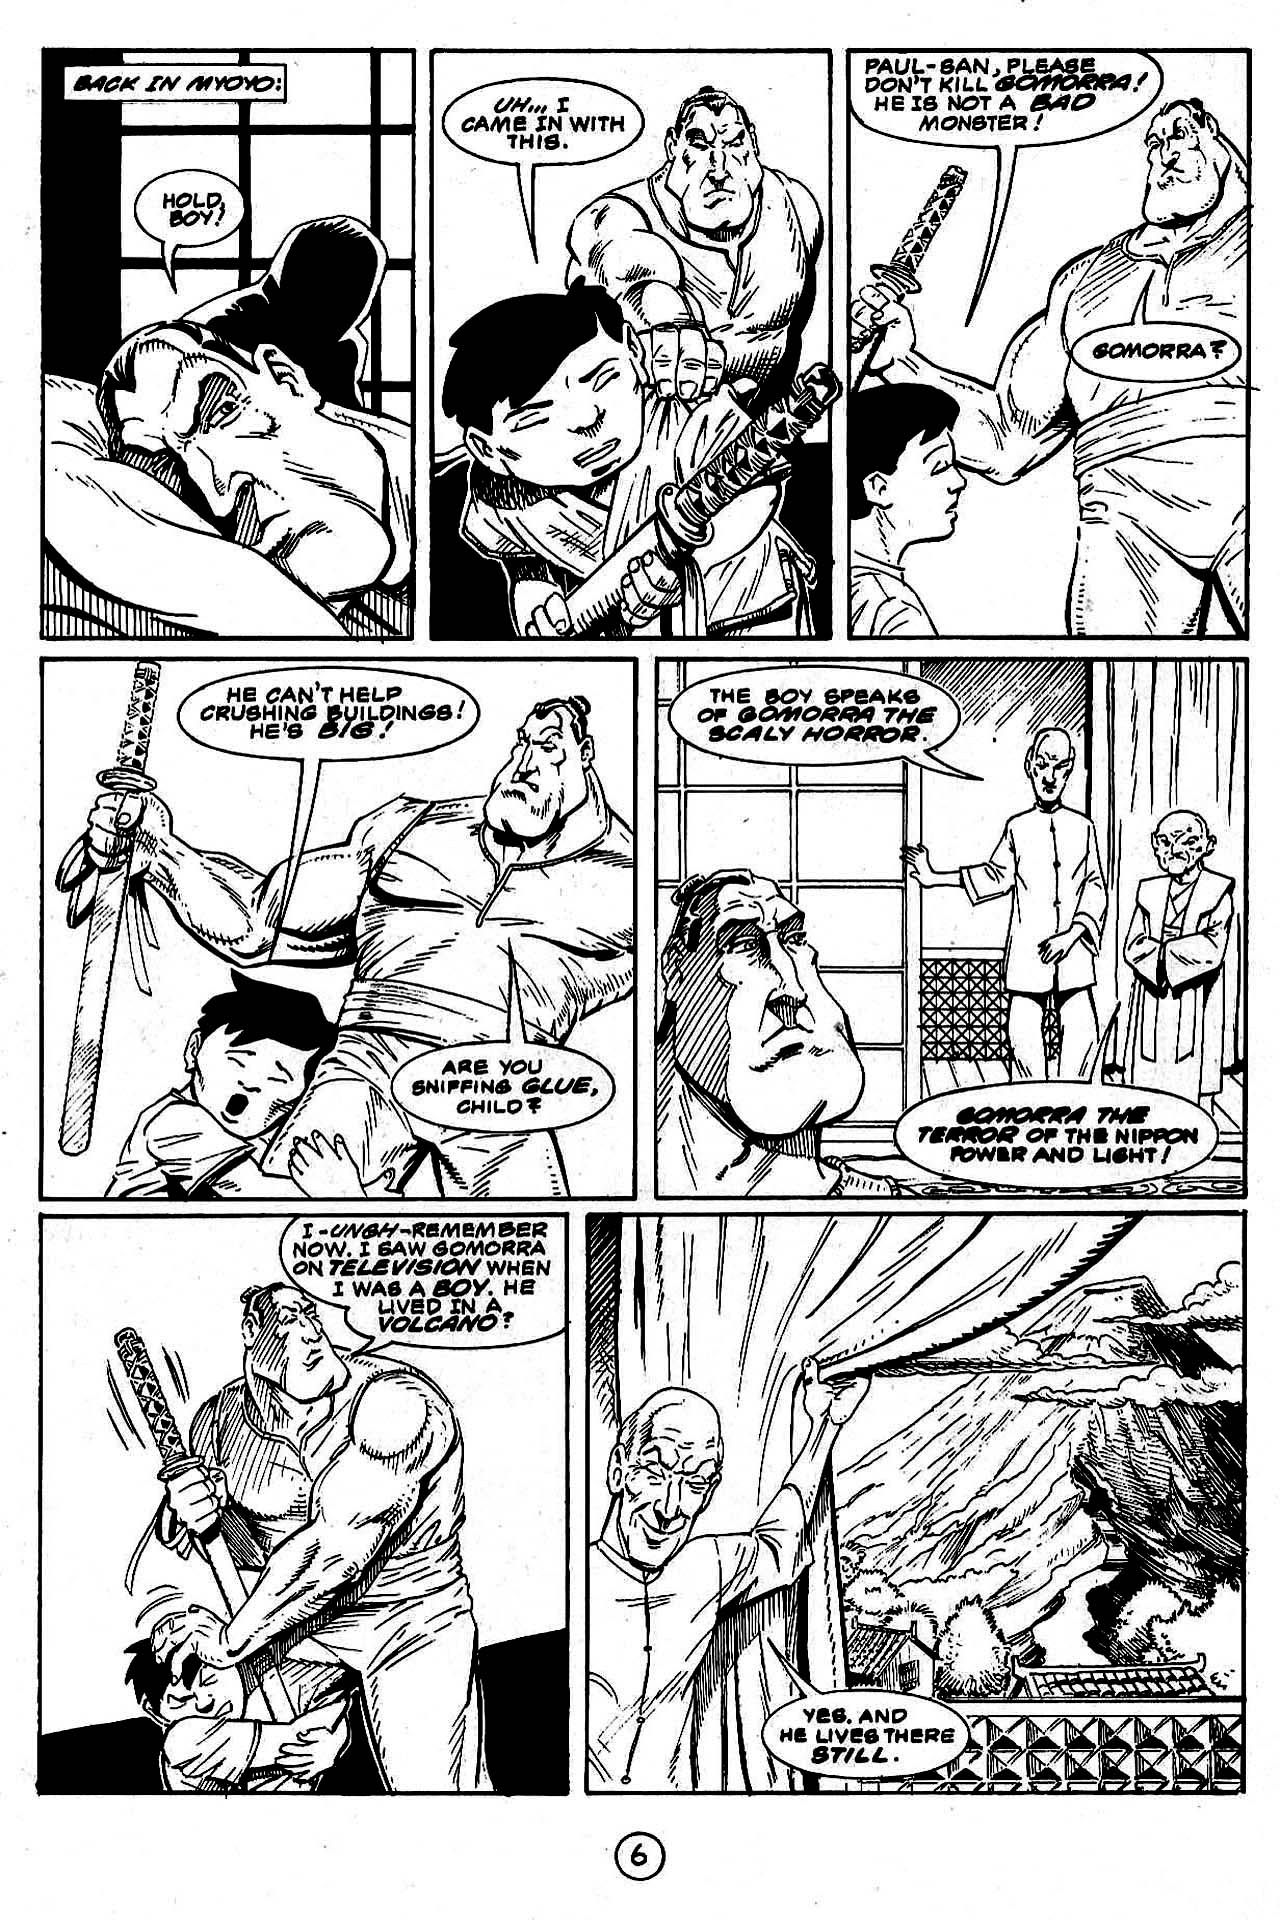 Read online Paul the Samurai (1992) comic -  Issue #7 - 7